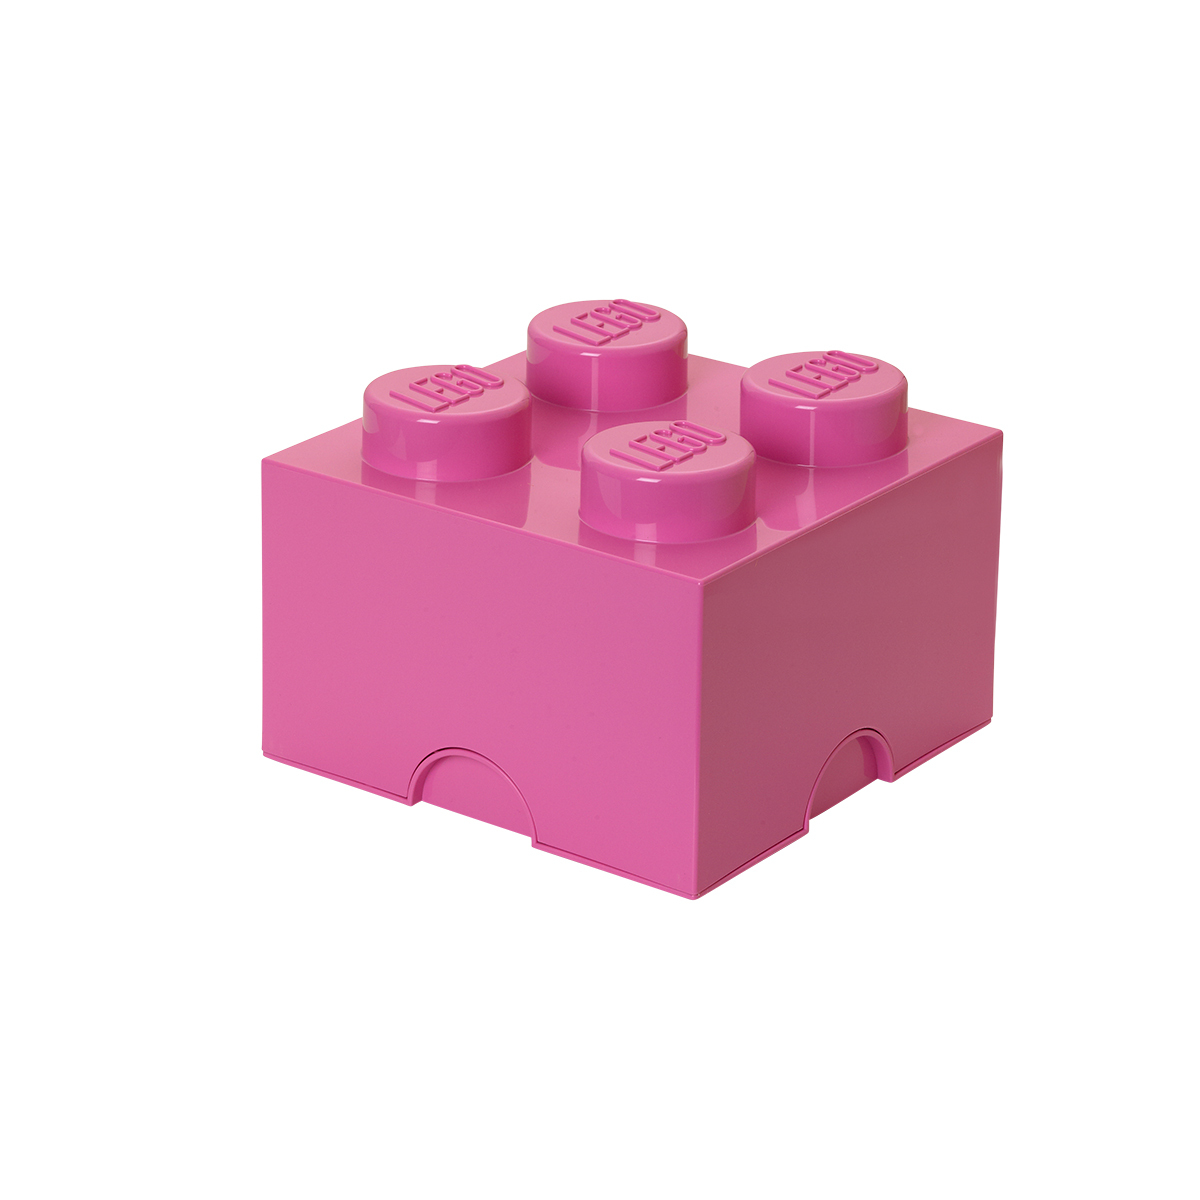 おもちゃ 収納 おもちゃ箱 レゴブロック 収納ボックス 幅25 レゴ